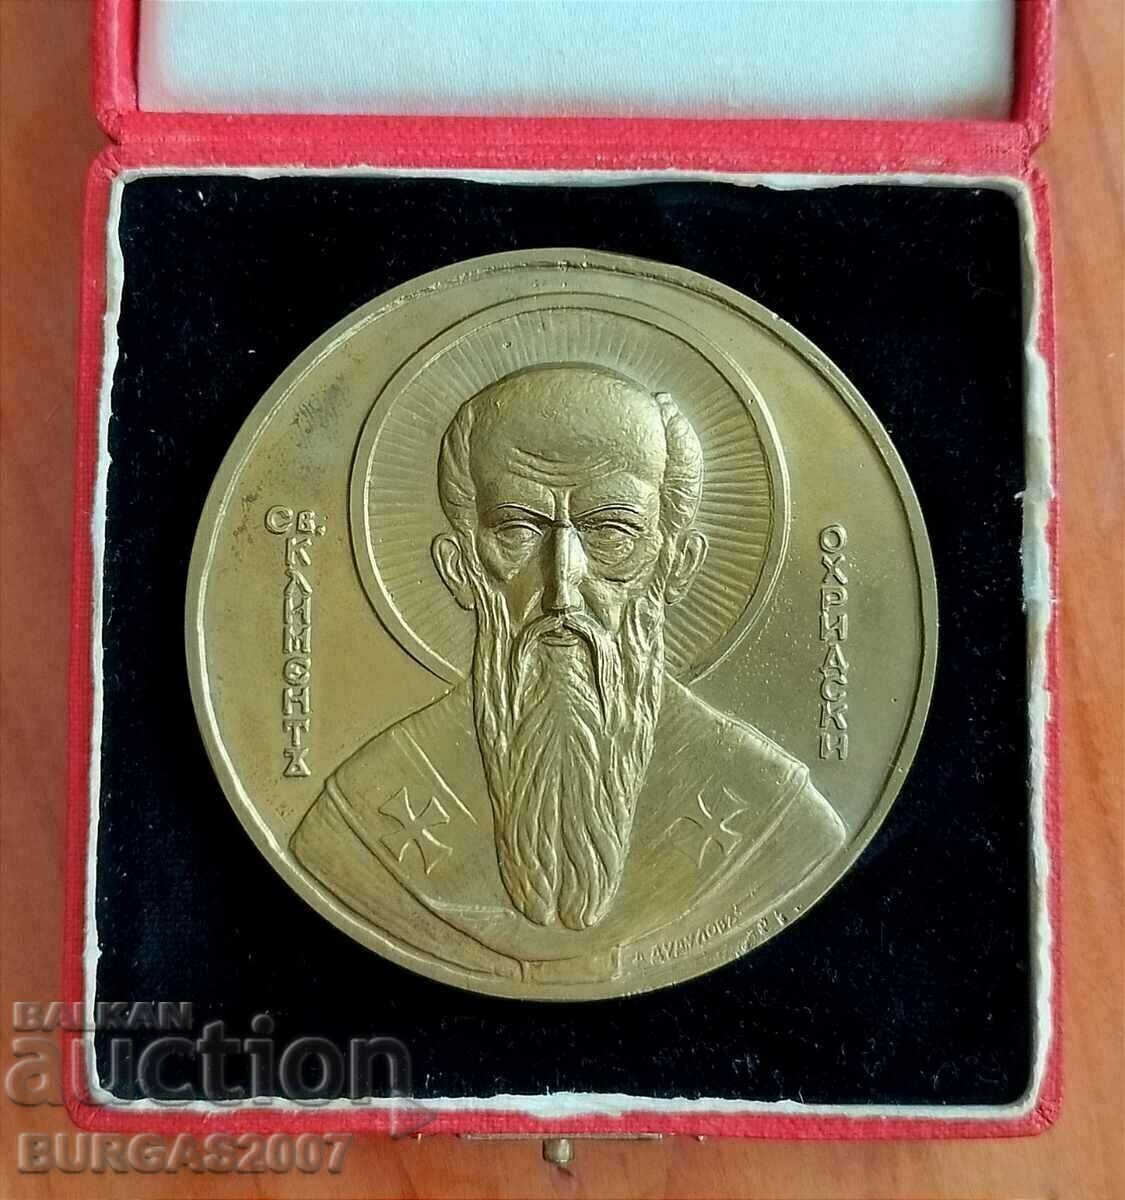 Μετάλλιο, πλακέτα, "50 χρόνια Soph. University, 1888-1938."